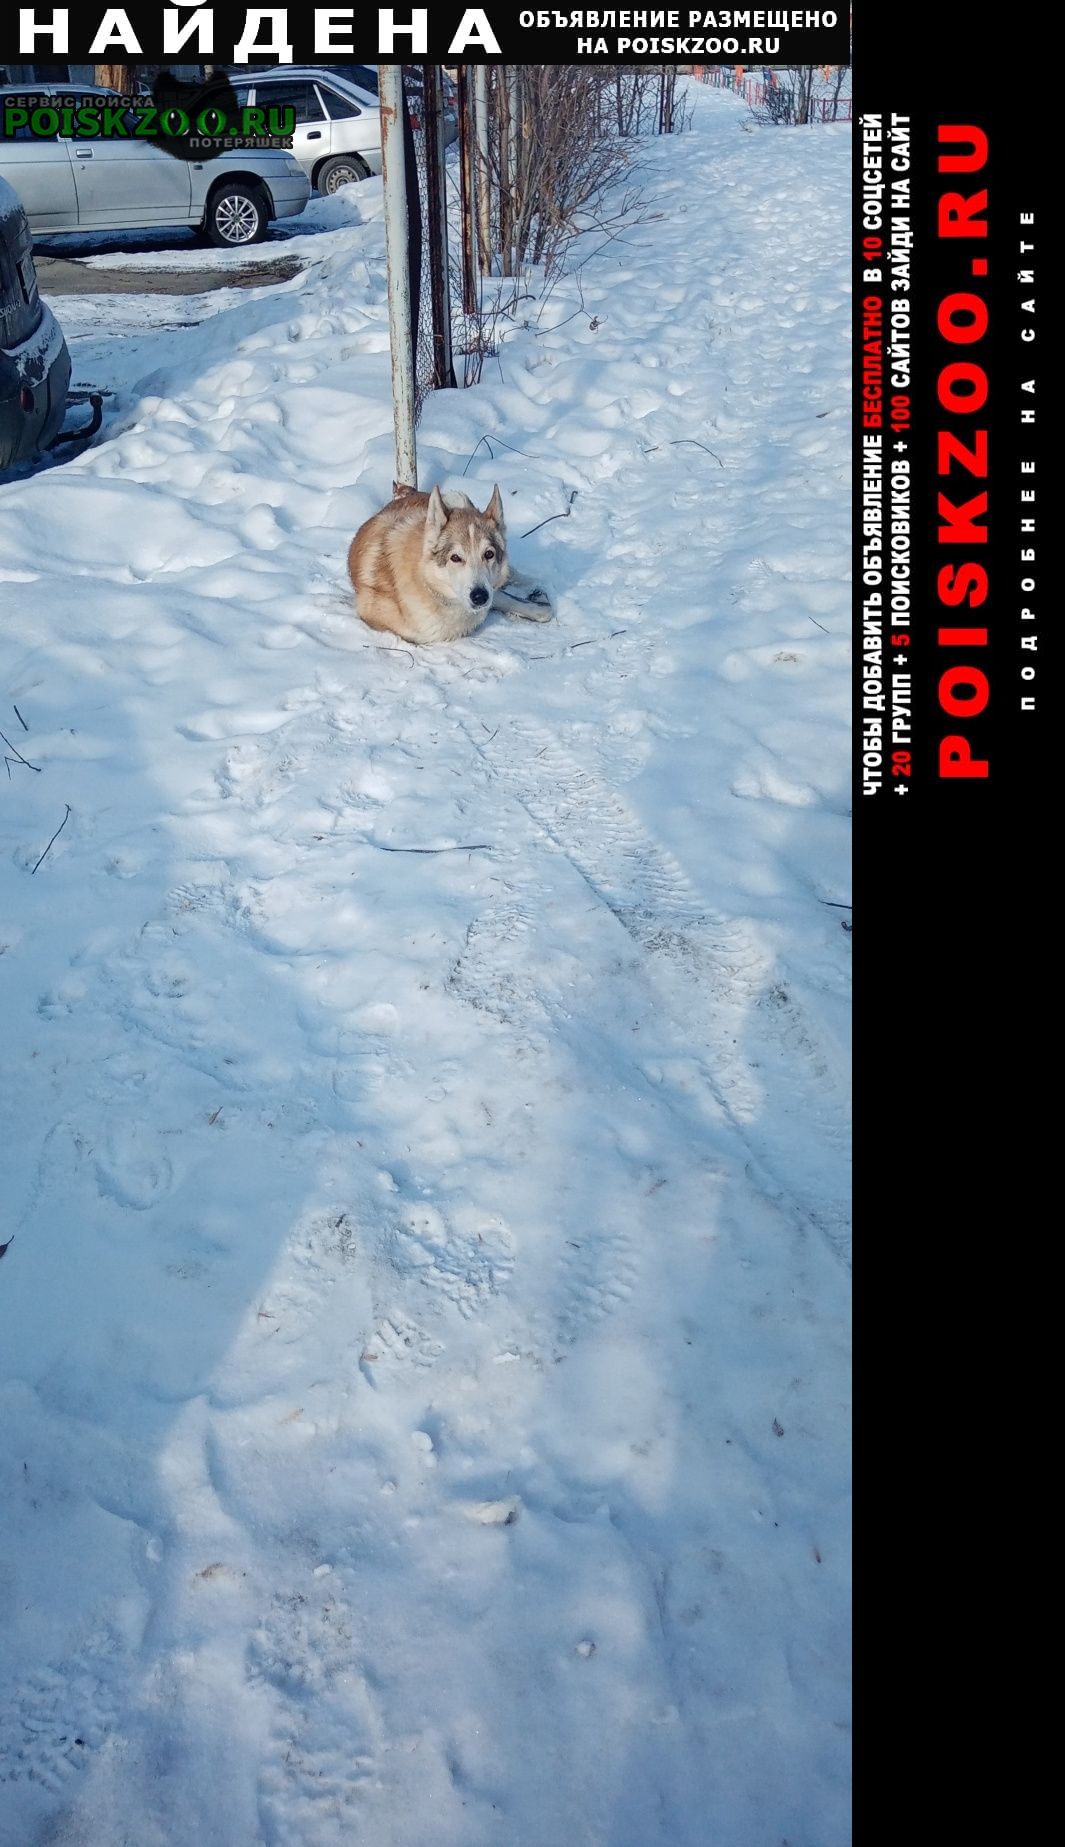 Найдена собака бегает комсомольский проспект 42, 44, 46 Челябинск